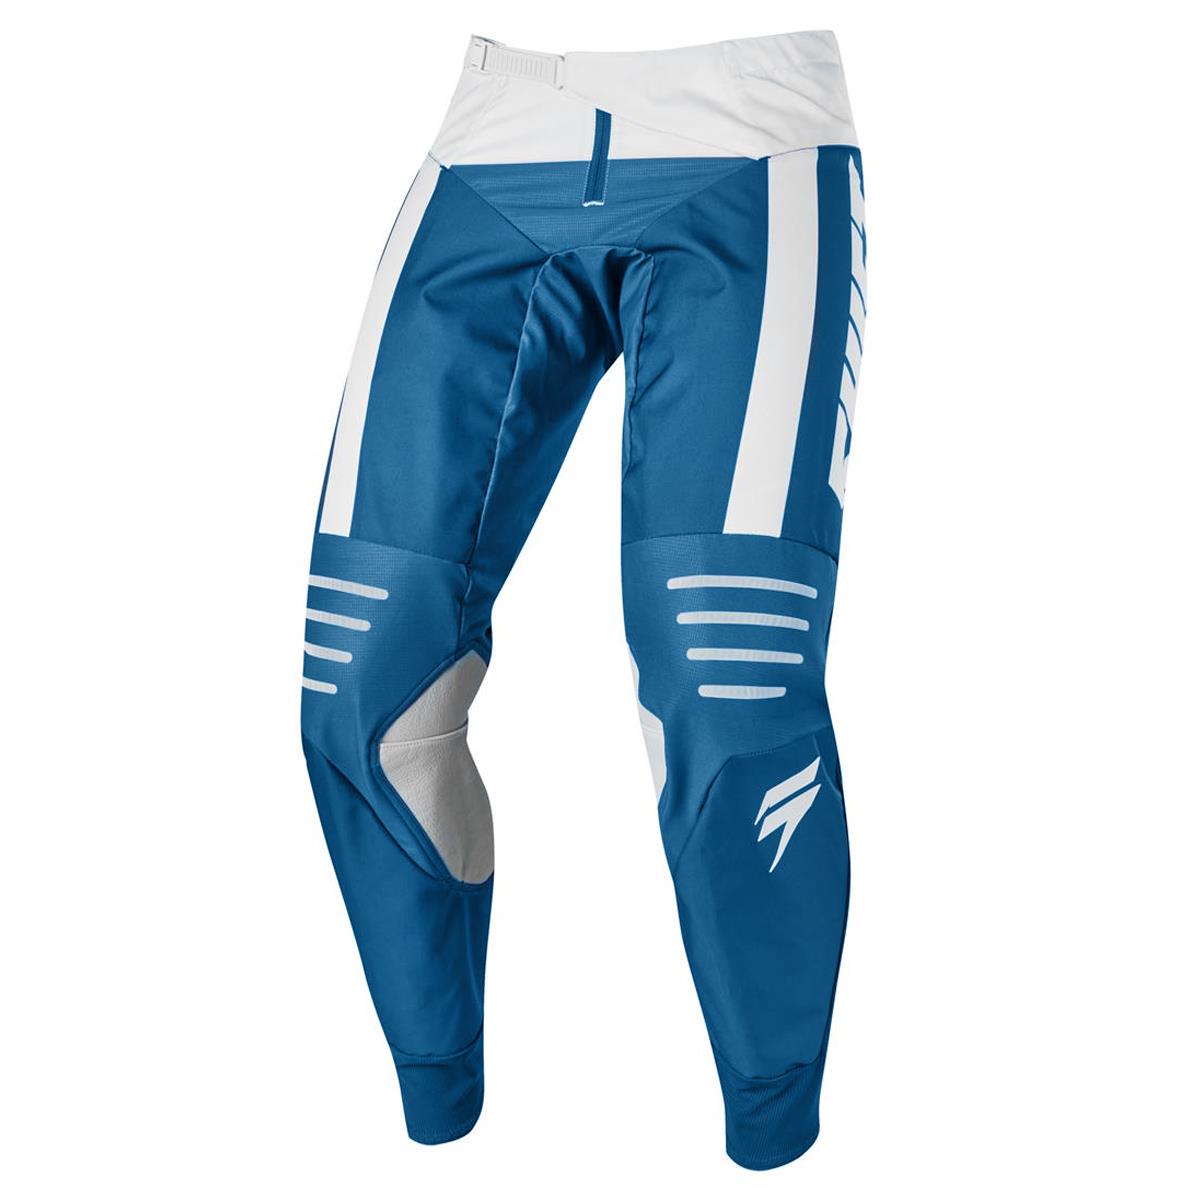 Shift Pantaloni MX 3lack Label Strike Blue